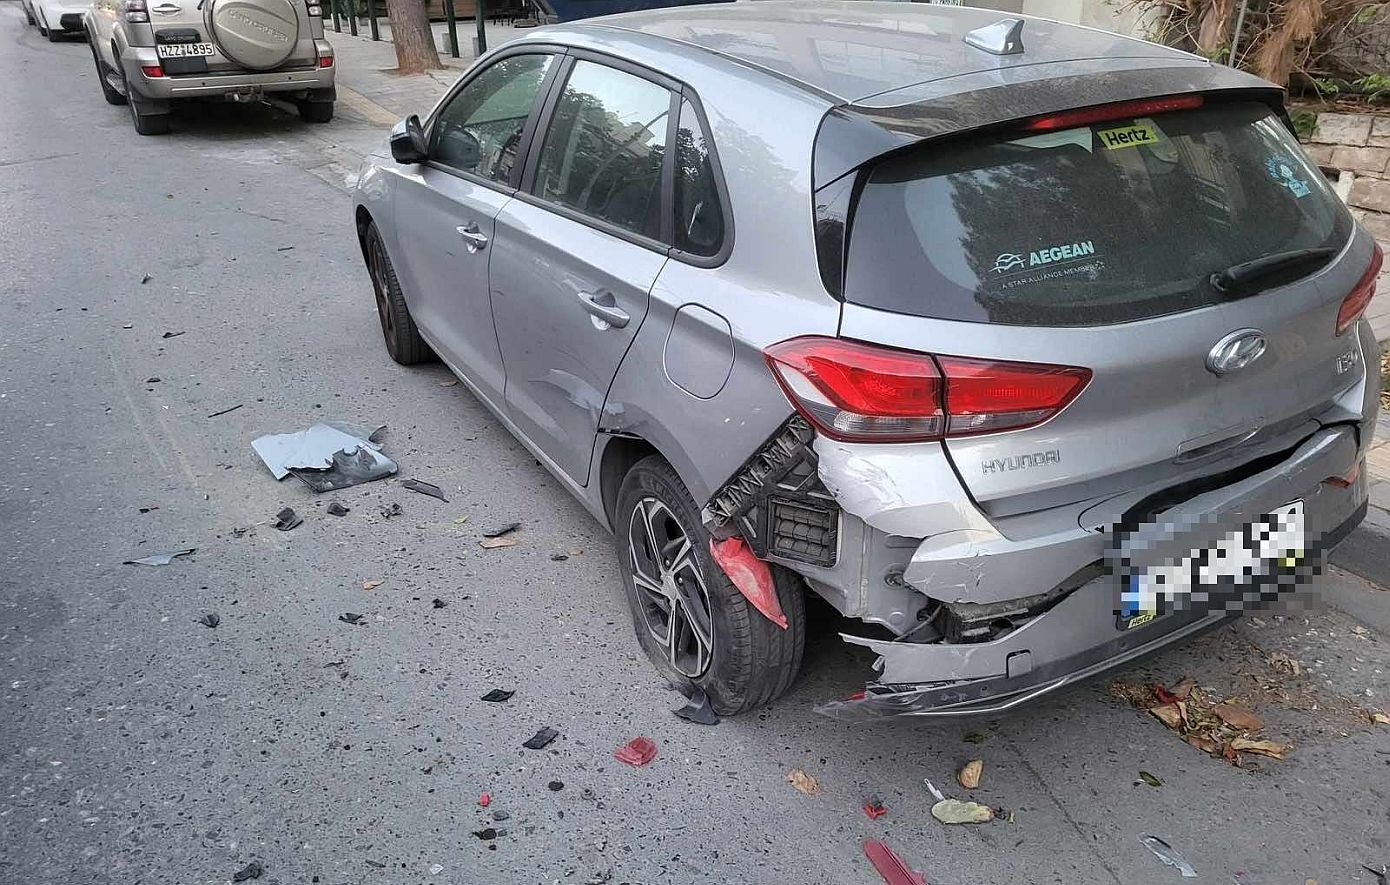 Τρελή πορεία αυτοκινήτου στο Ηράκλειο: Έπεσε πάνω σε σταθμευμένα οχήματα – Ο οδηγός εξαφανίστηκε